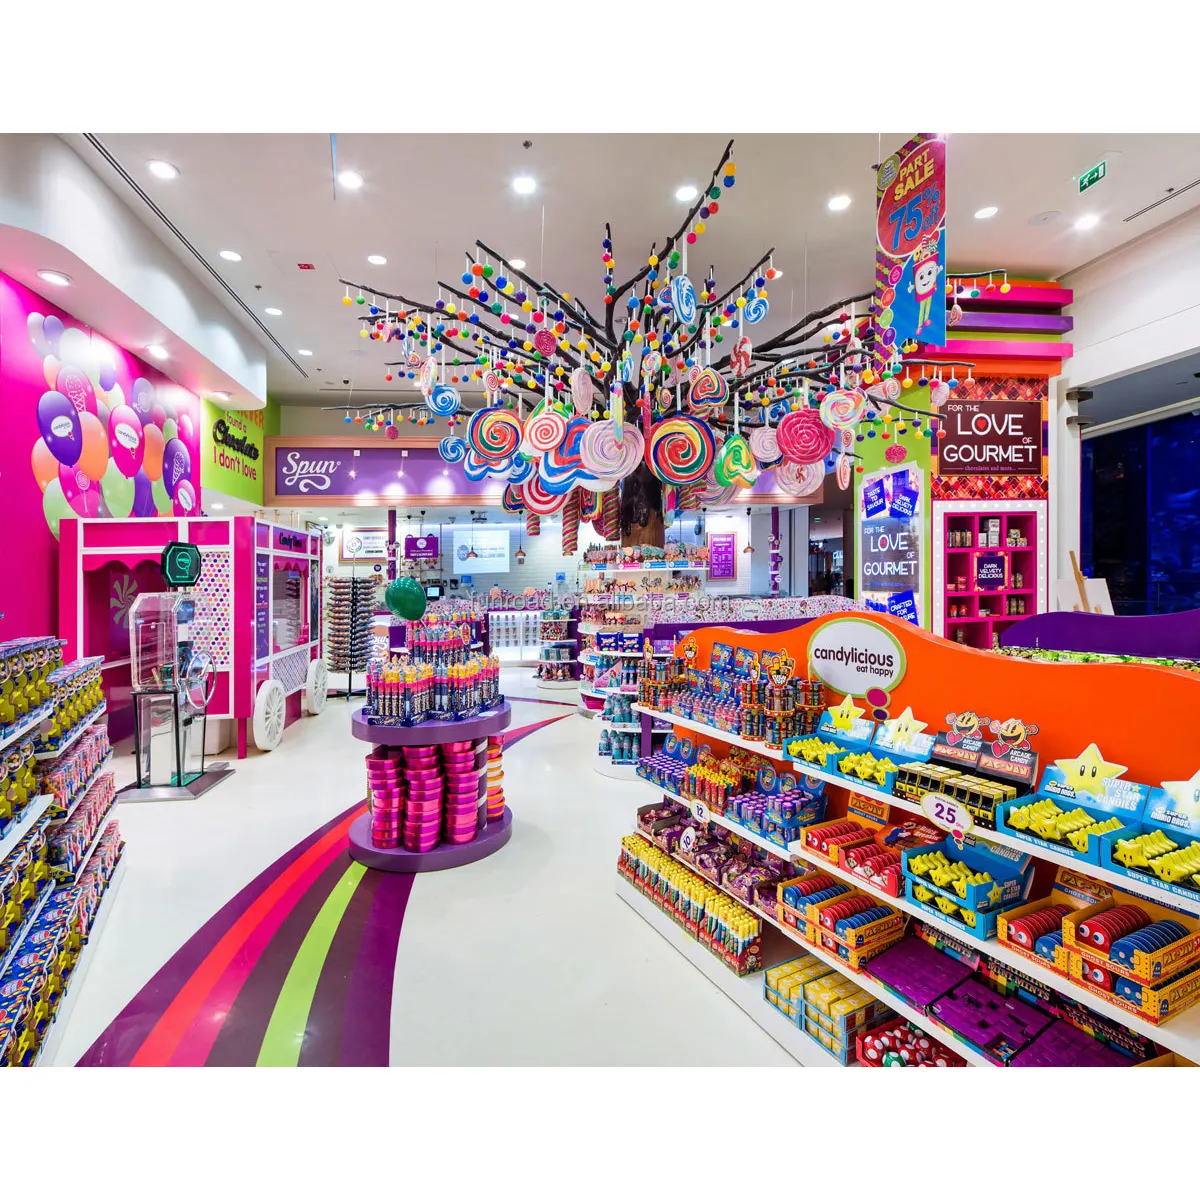 Bunte Candy Store Möbel Dekorationen Candy Stand Showcase Sweet Chocolate Sugar Display Rack Candy Shop Innen architektur